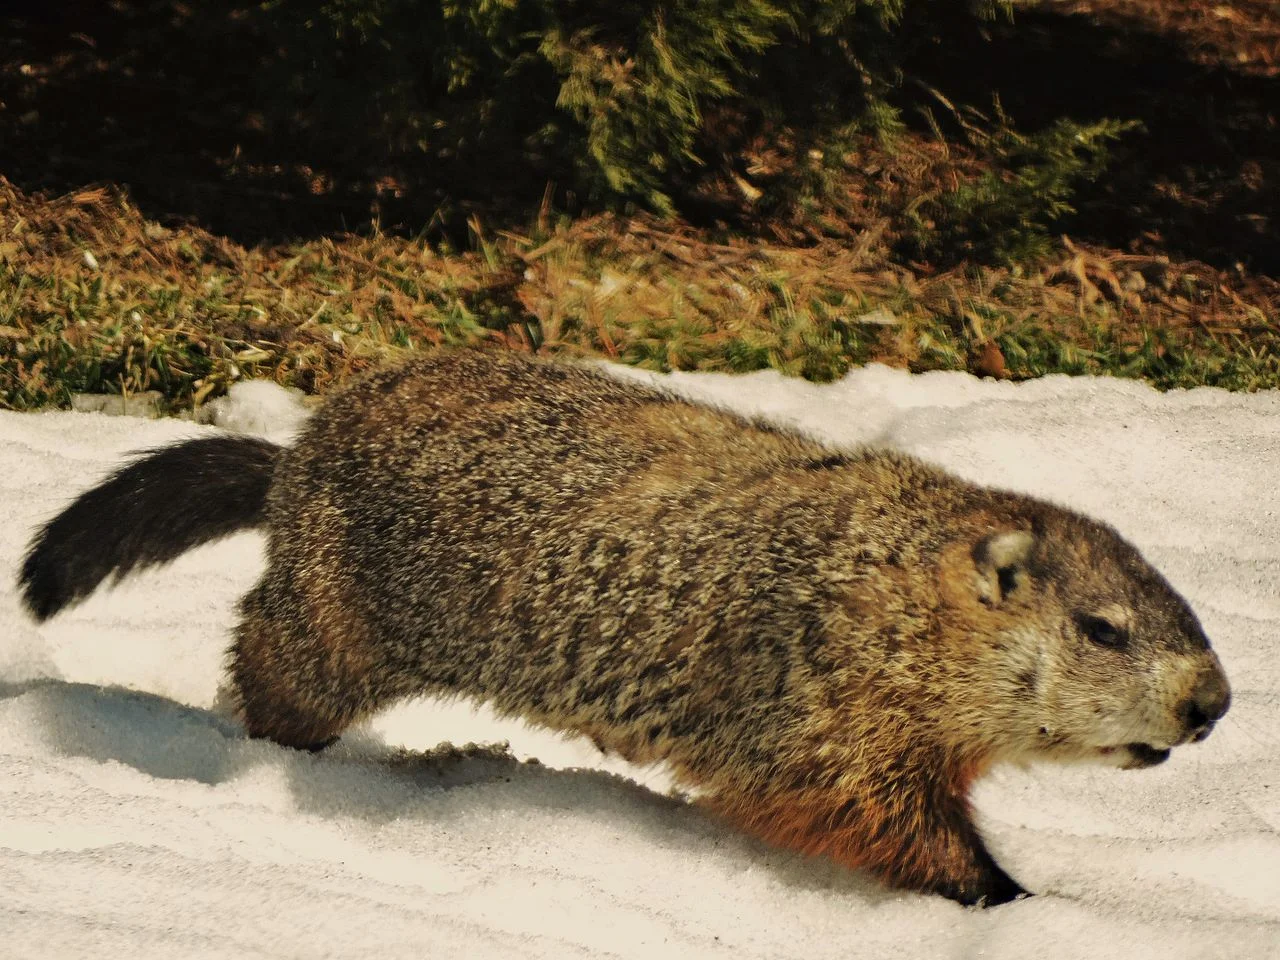 Groundhog vs Woodchuck